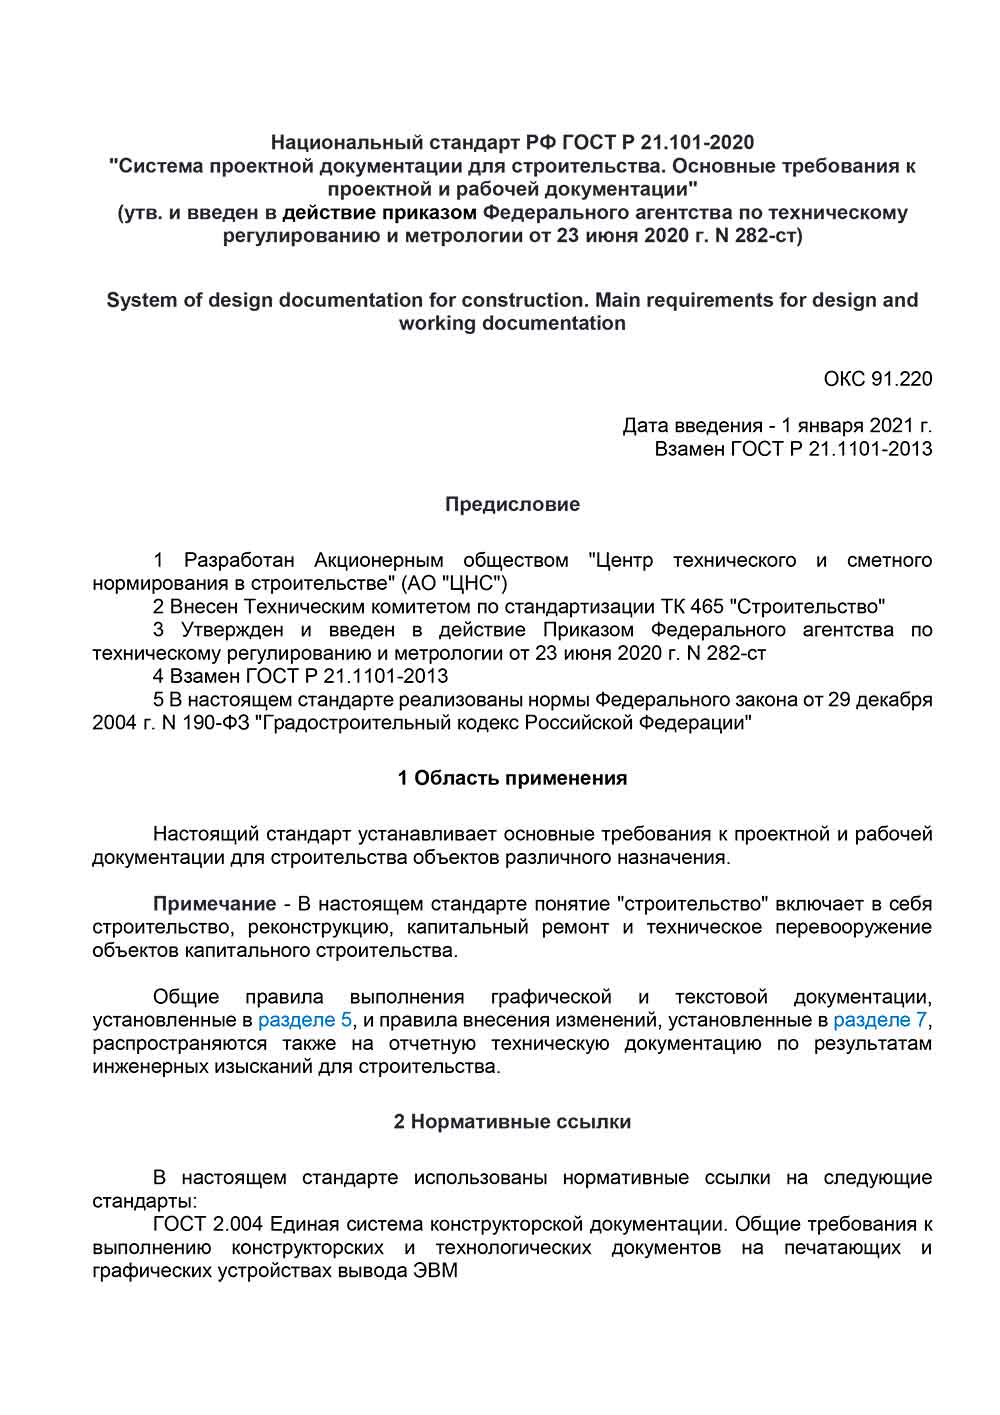 ГОСТ Р 21.101-2020 от 01.01.2021 г. скачать бесплатно pdf